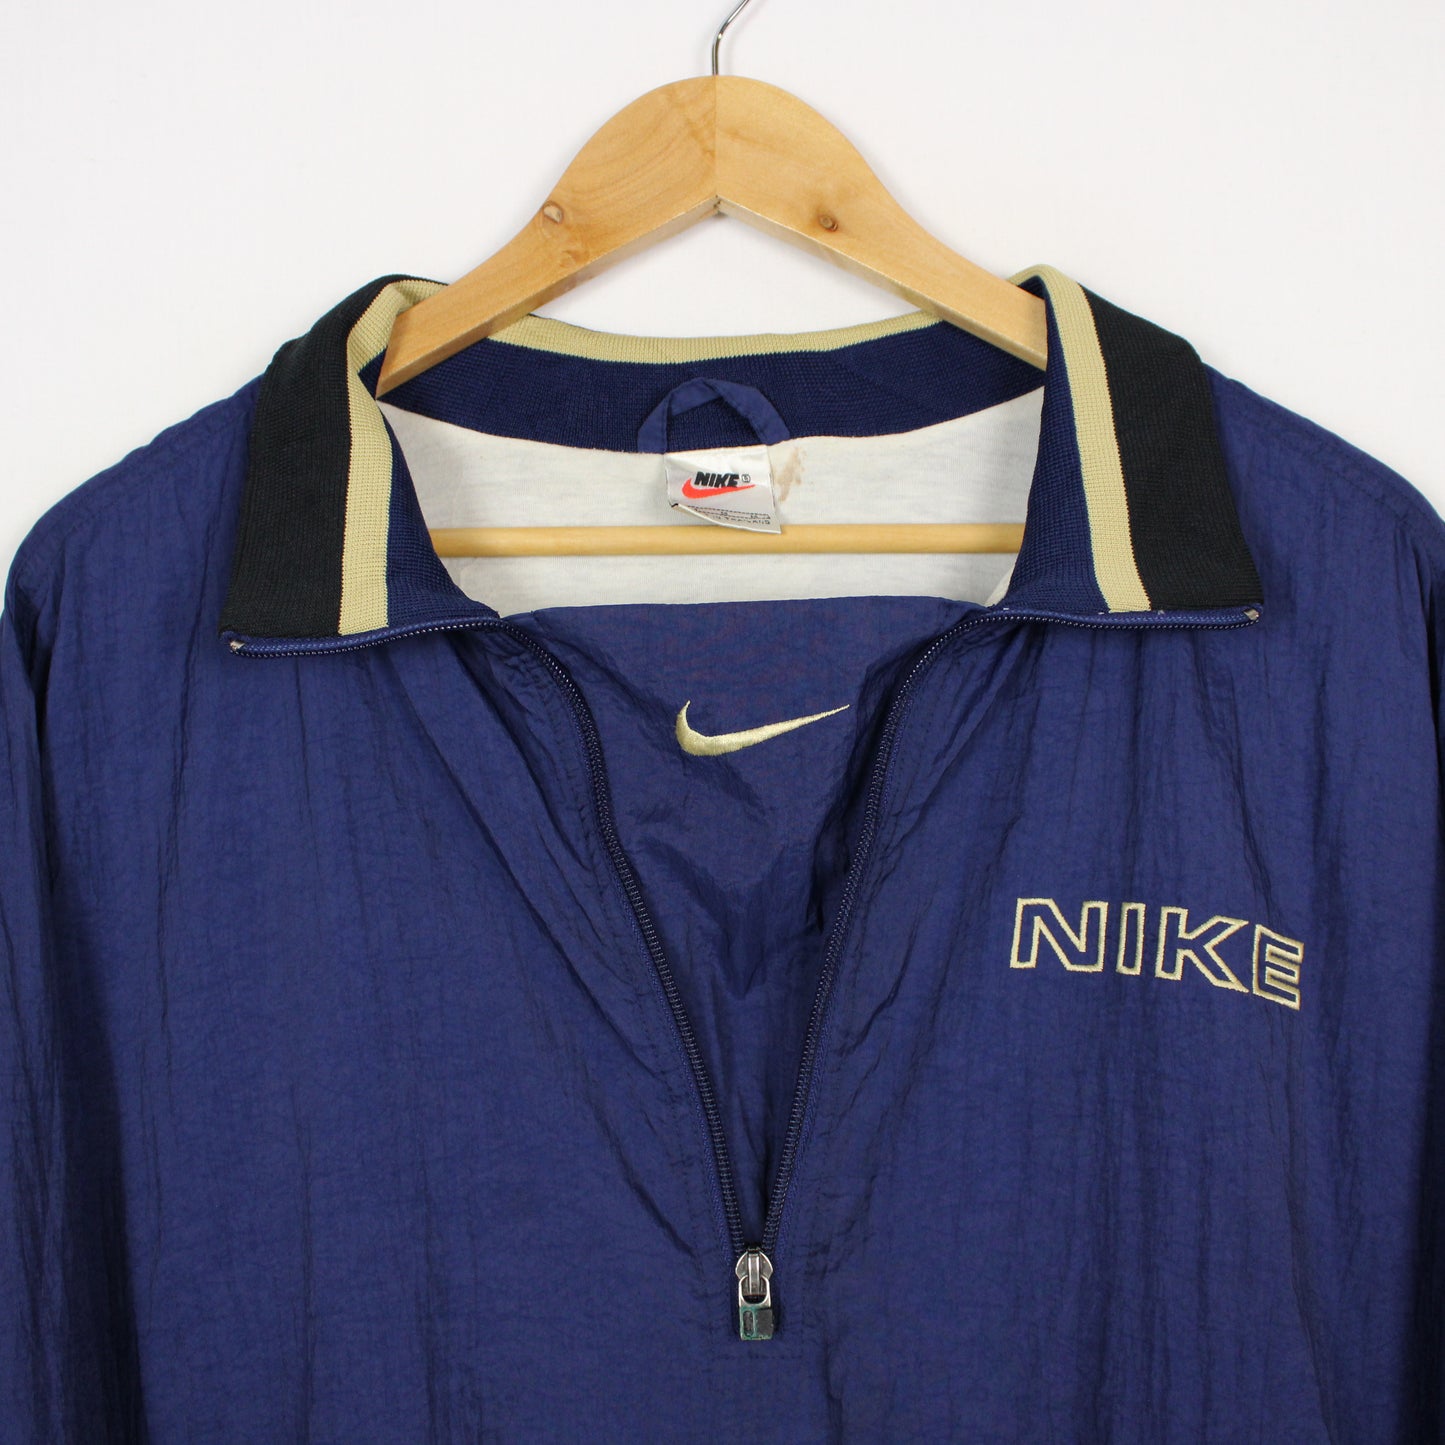 Vintage 90's Nike 1/4 Zip Jacket - M